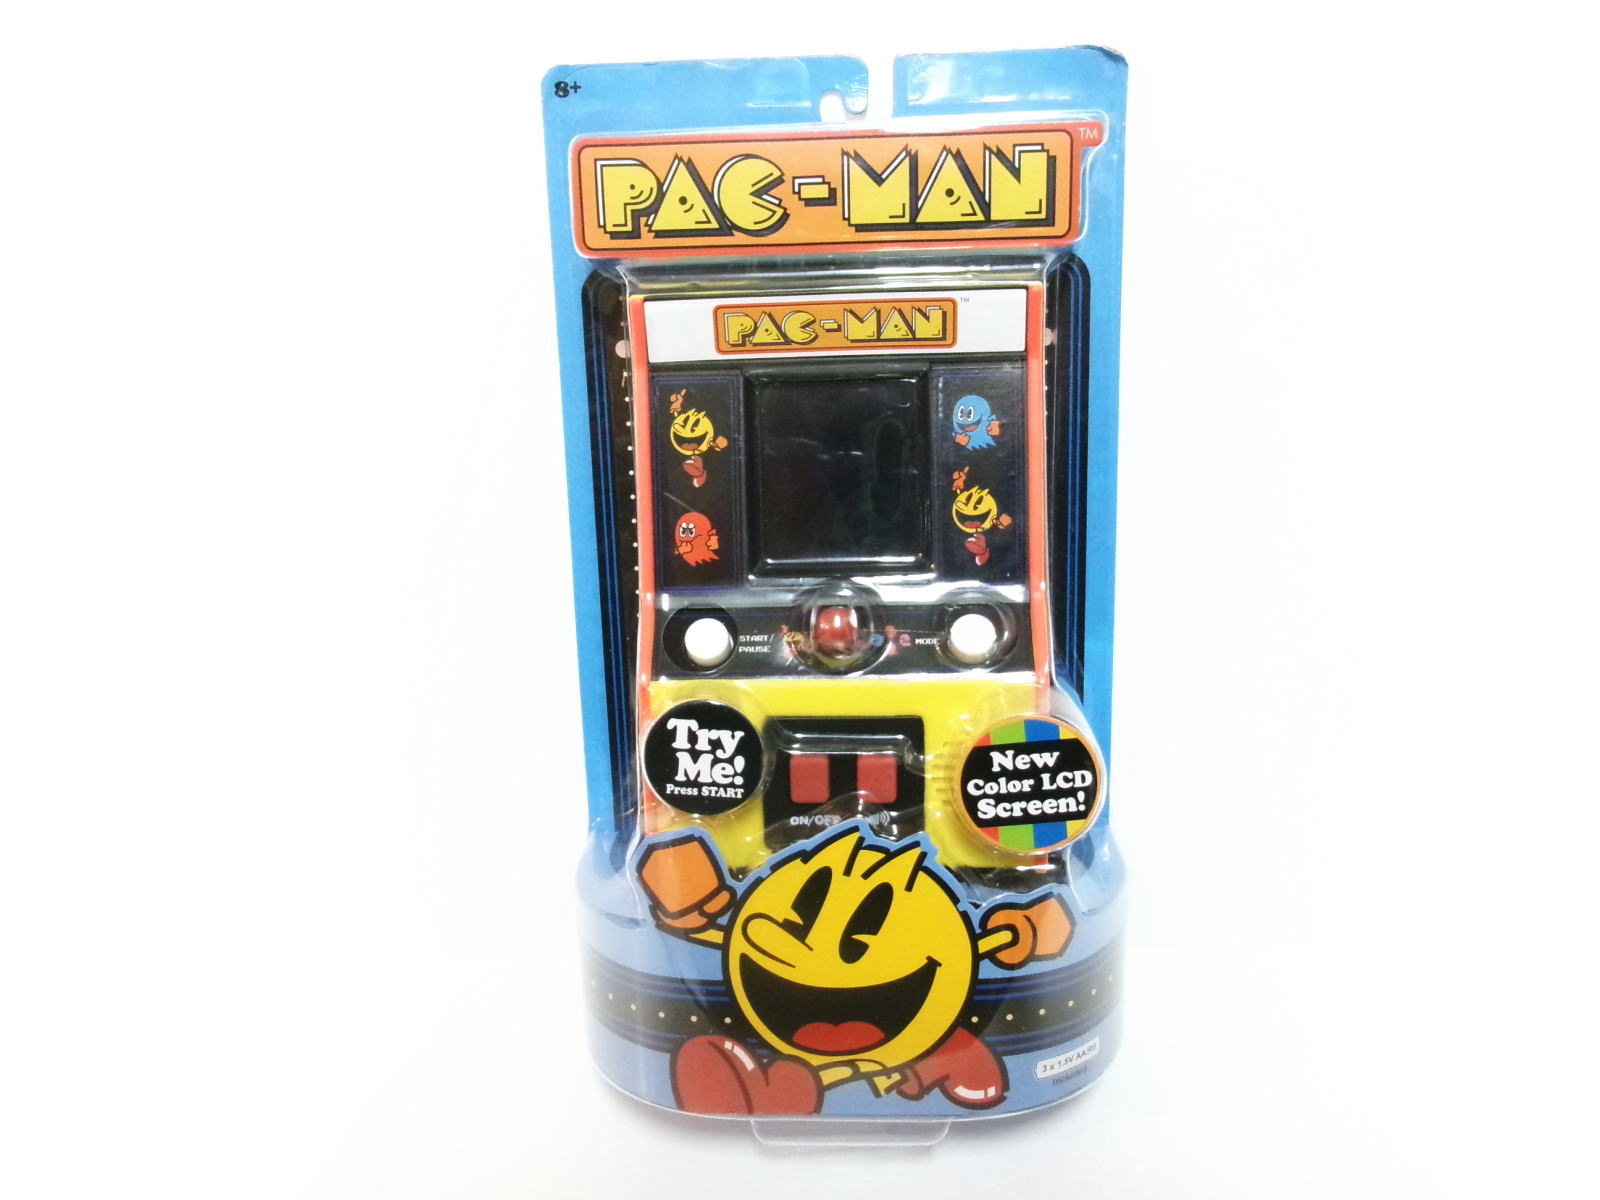 パックマン PAC-MAN レトロアーケード ゲーム機 復刻 スモールサイズ Classic Arcade Gameplay